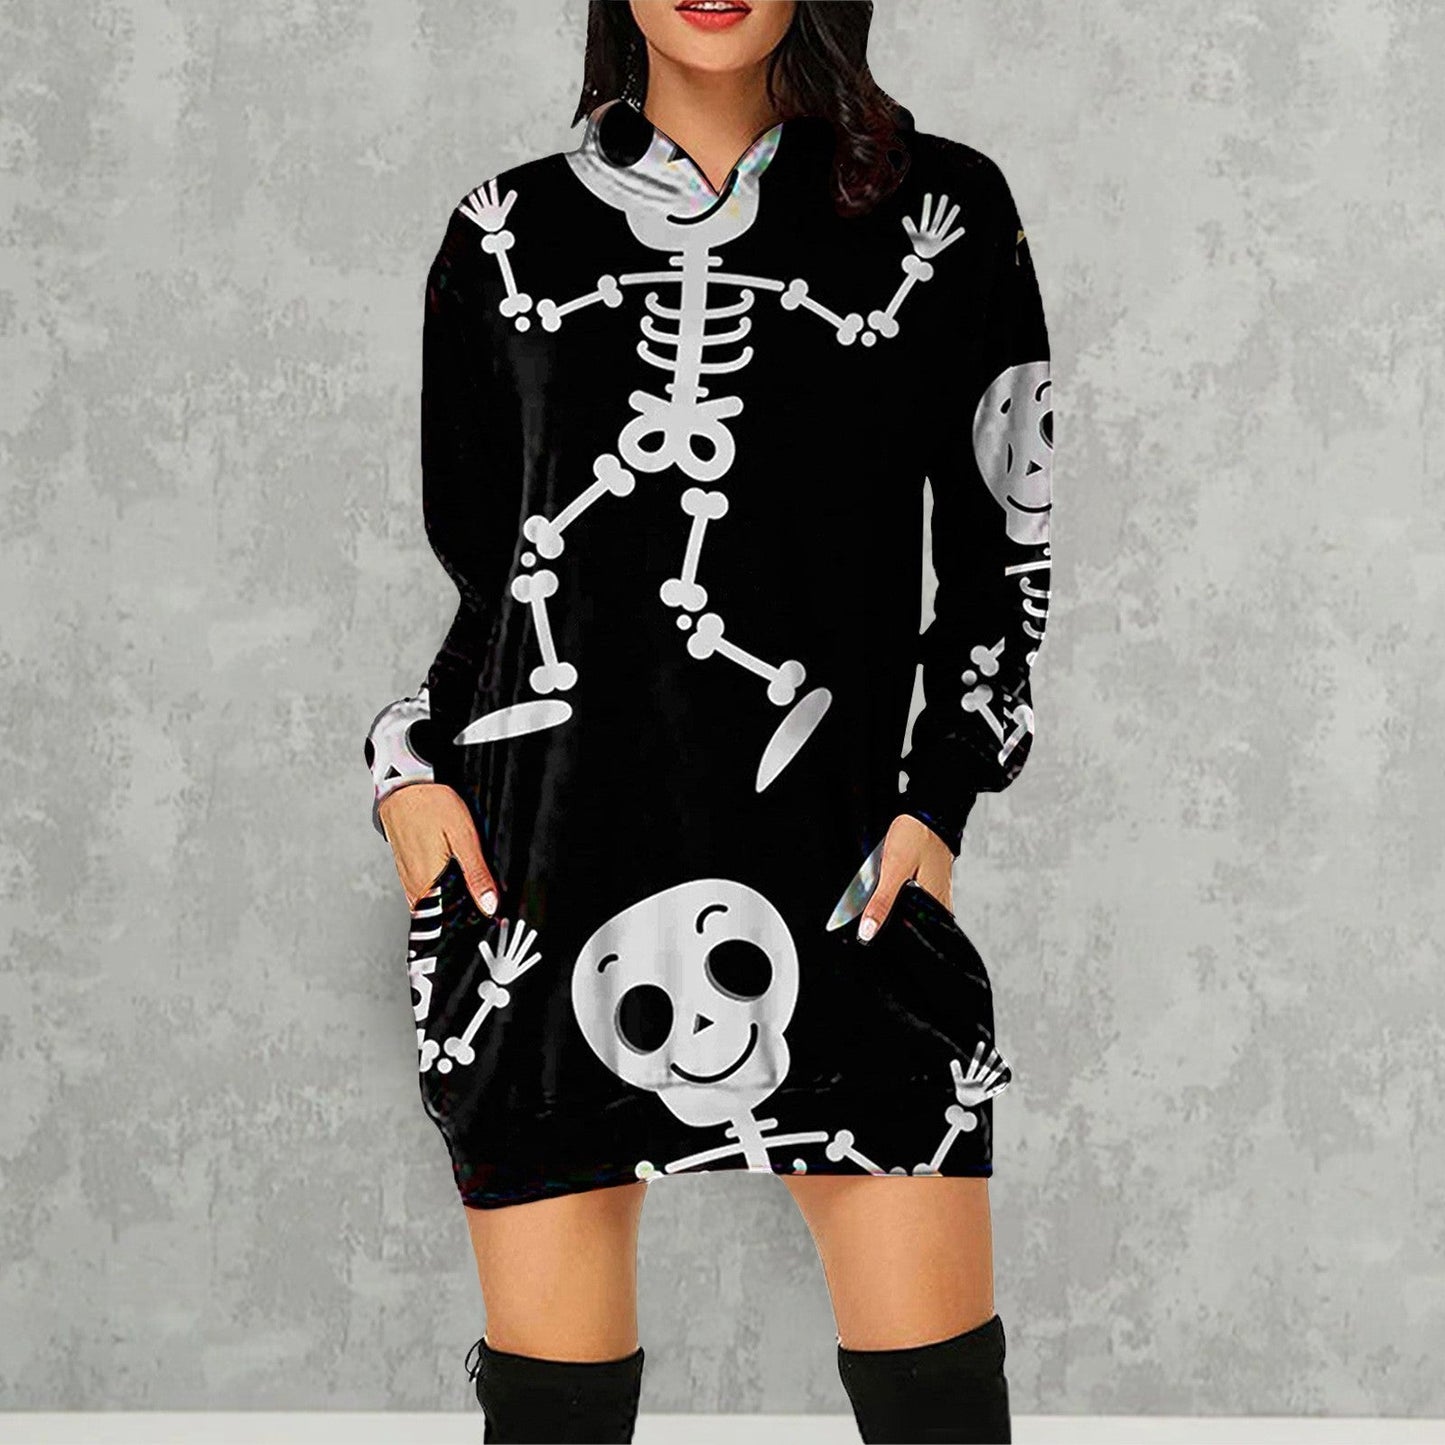 Halloween Pumpkin Design Long Sleeves Hoodies for Women-Black Human Skeleton-S-Free Shipping at meselling99